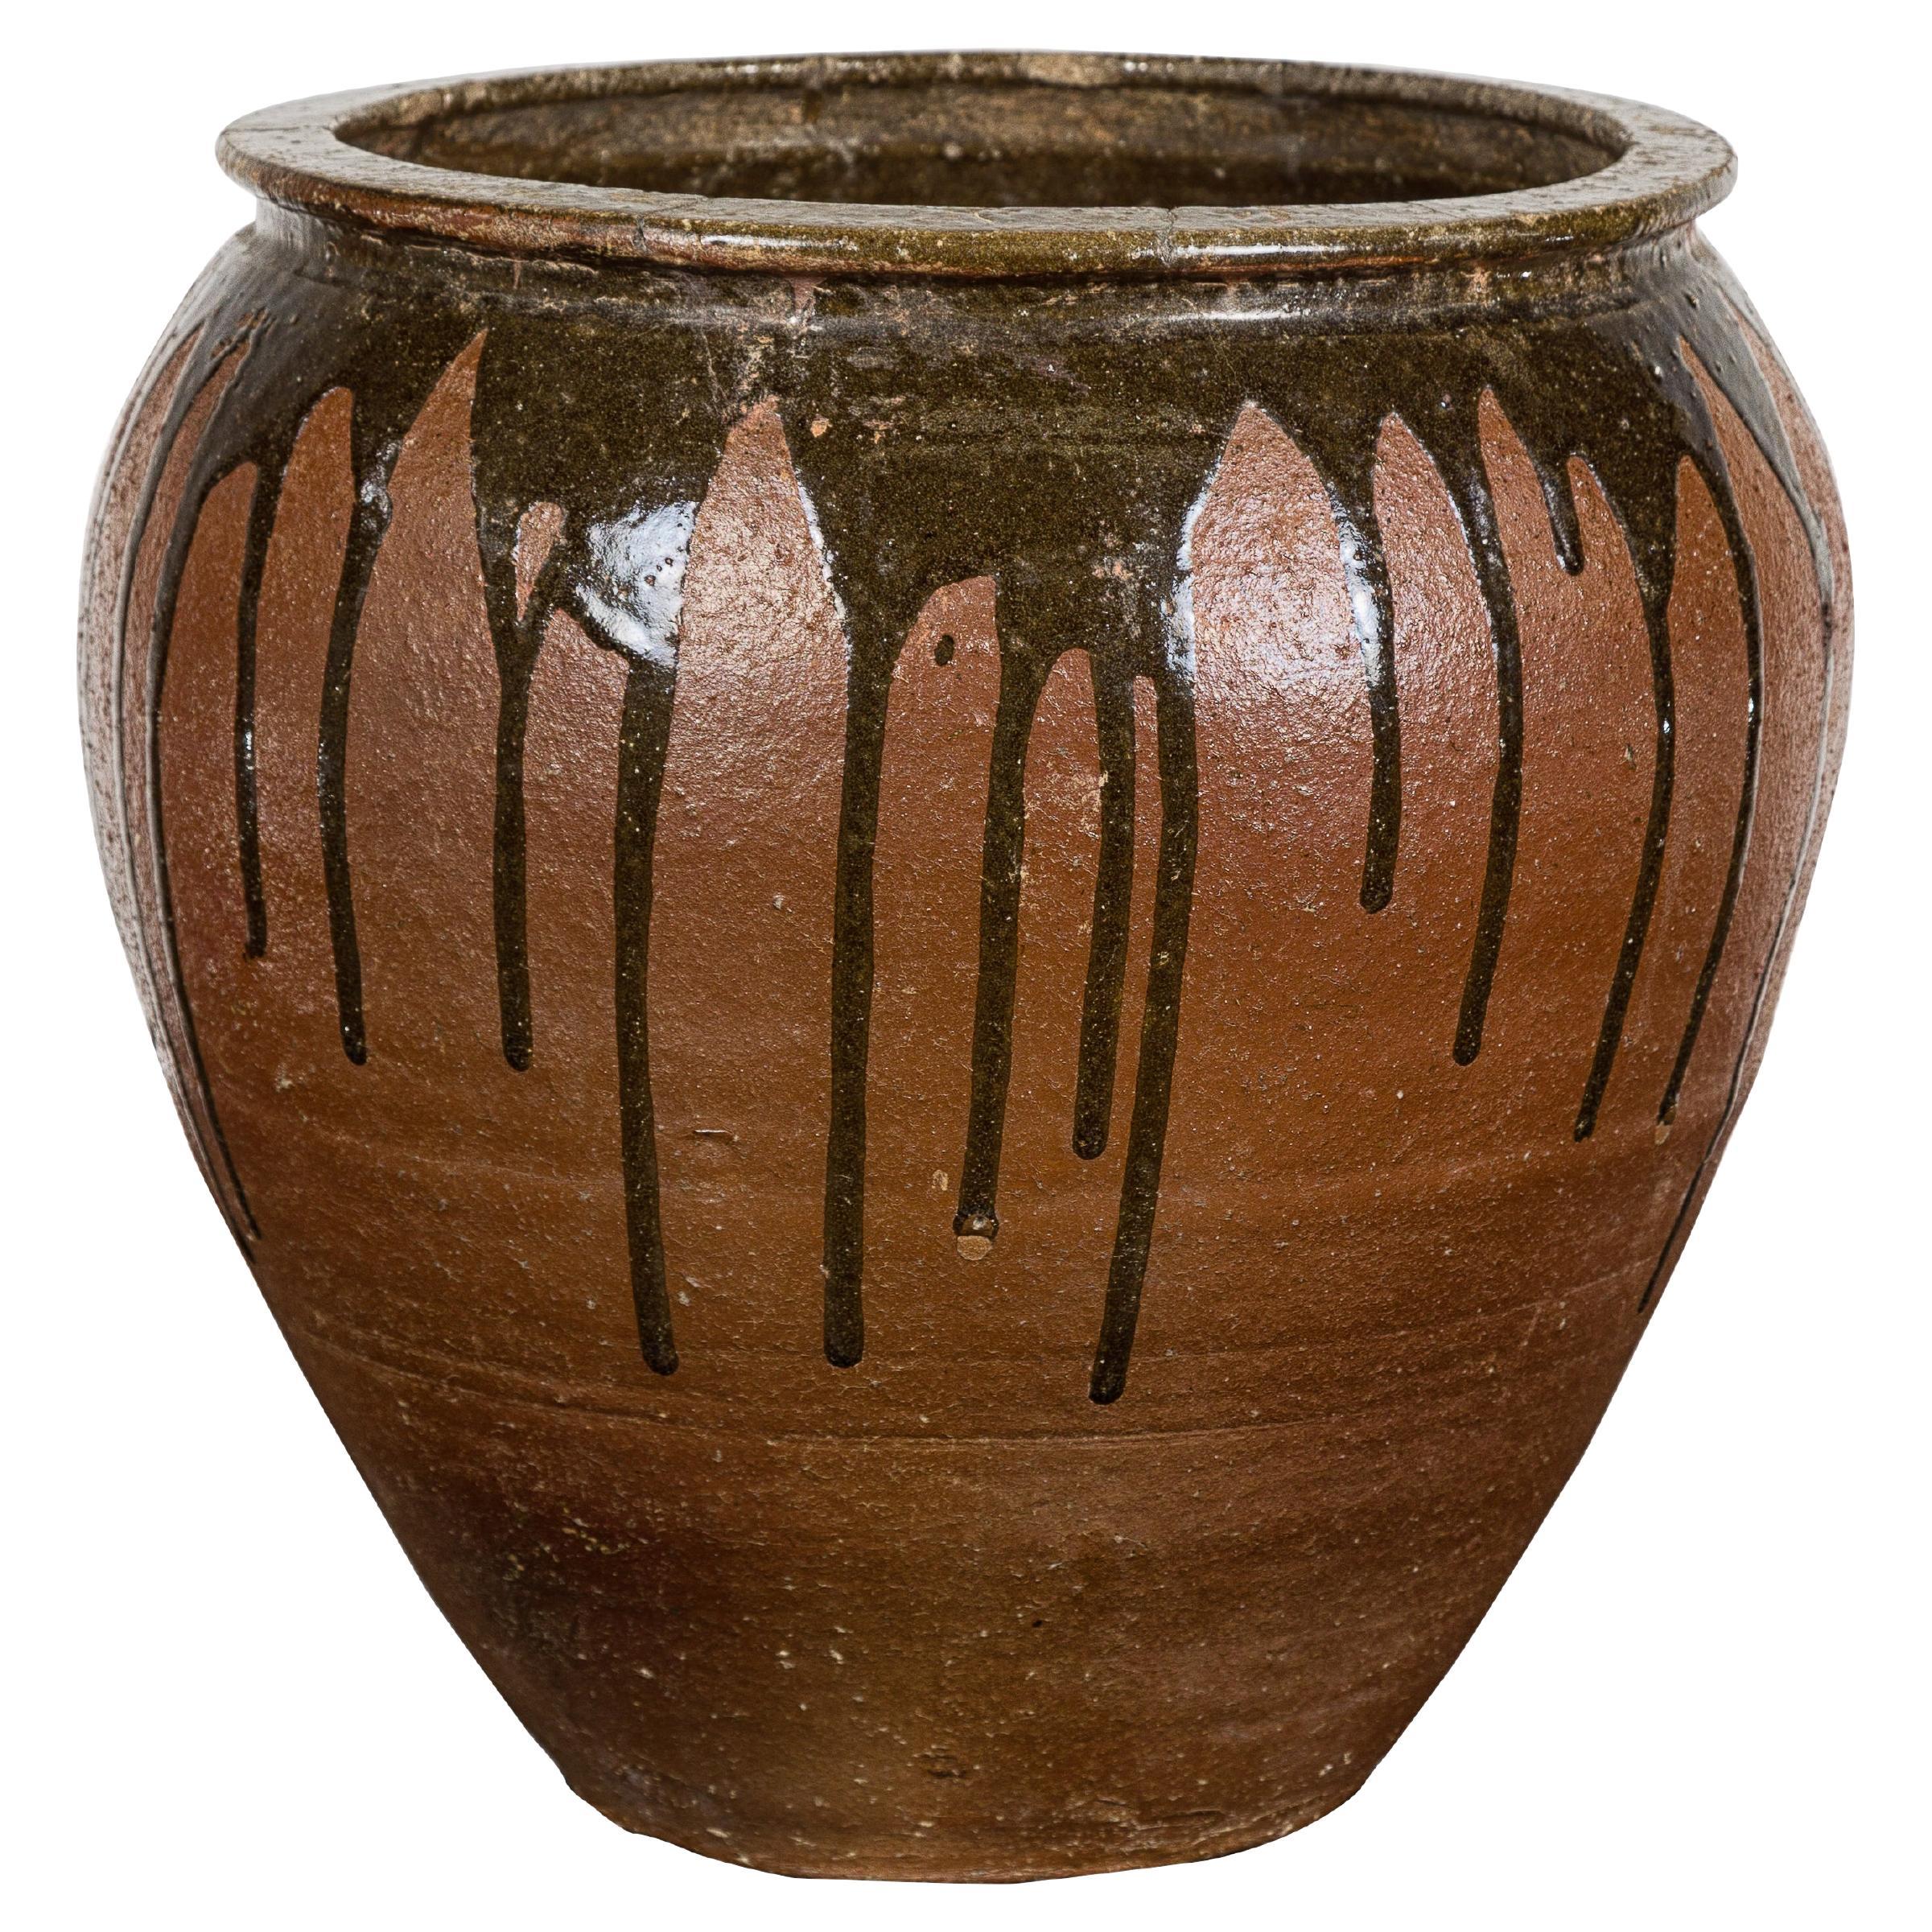 Japanische Tamba Ware Brown glasiert Keramik Salz Topf Pflanzer mit Dripping